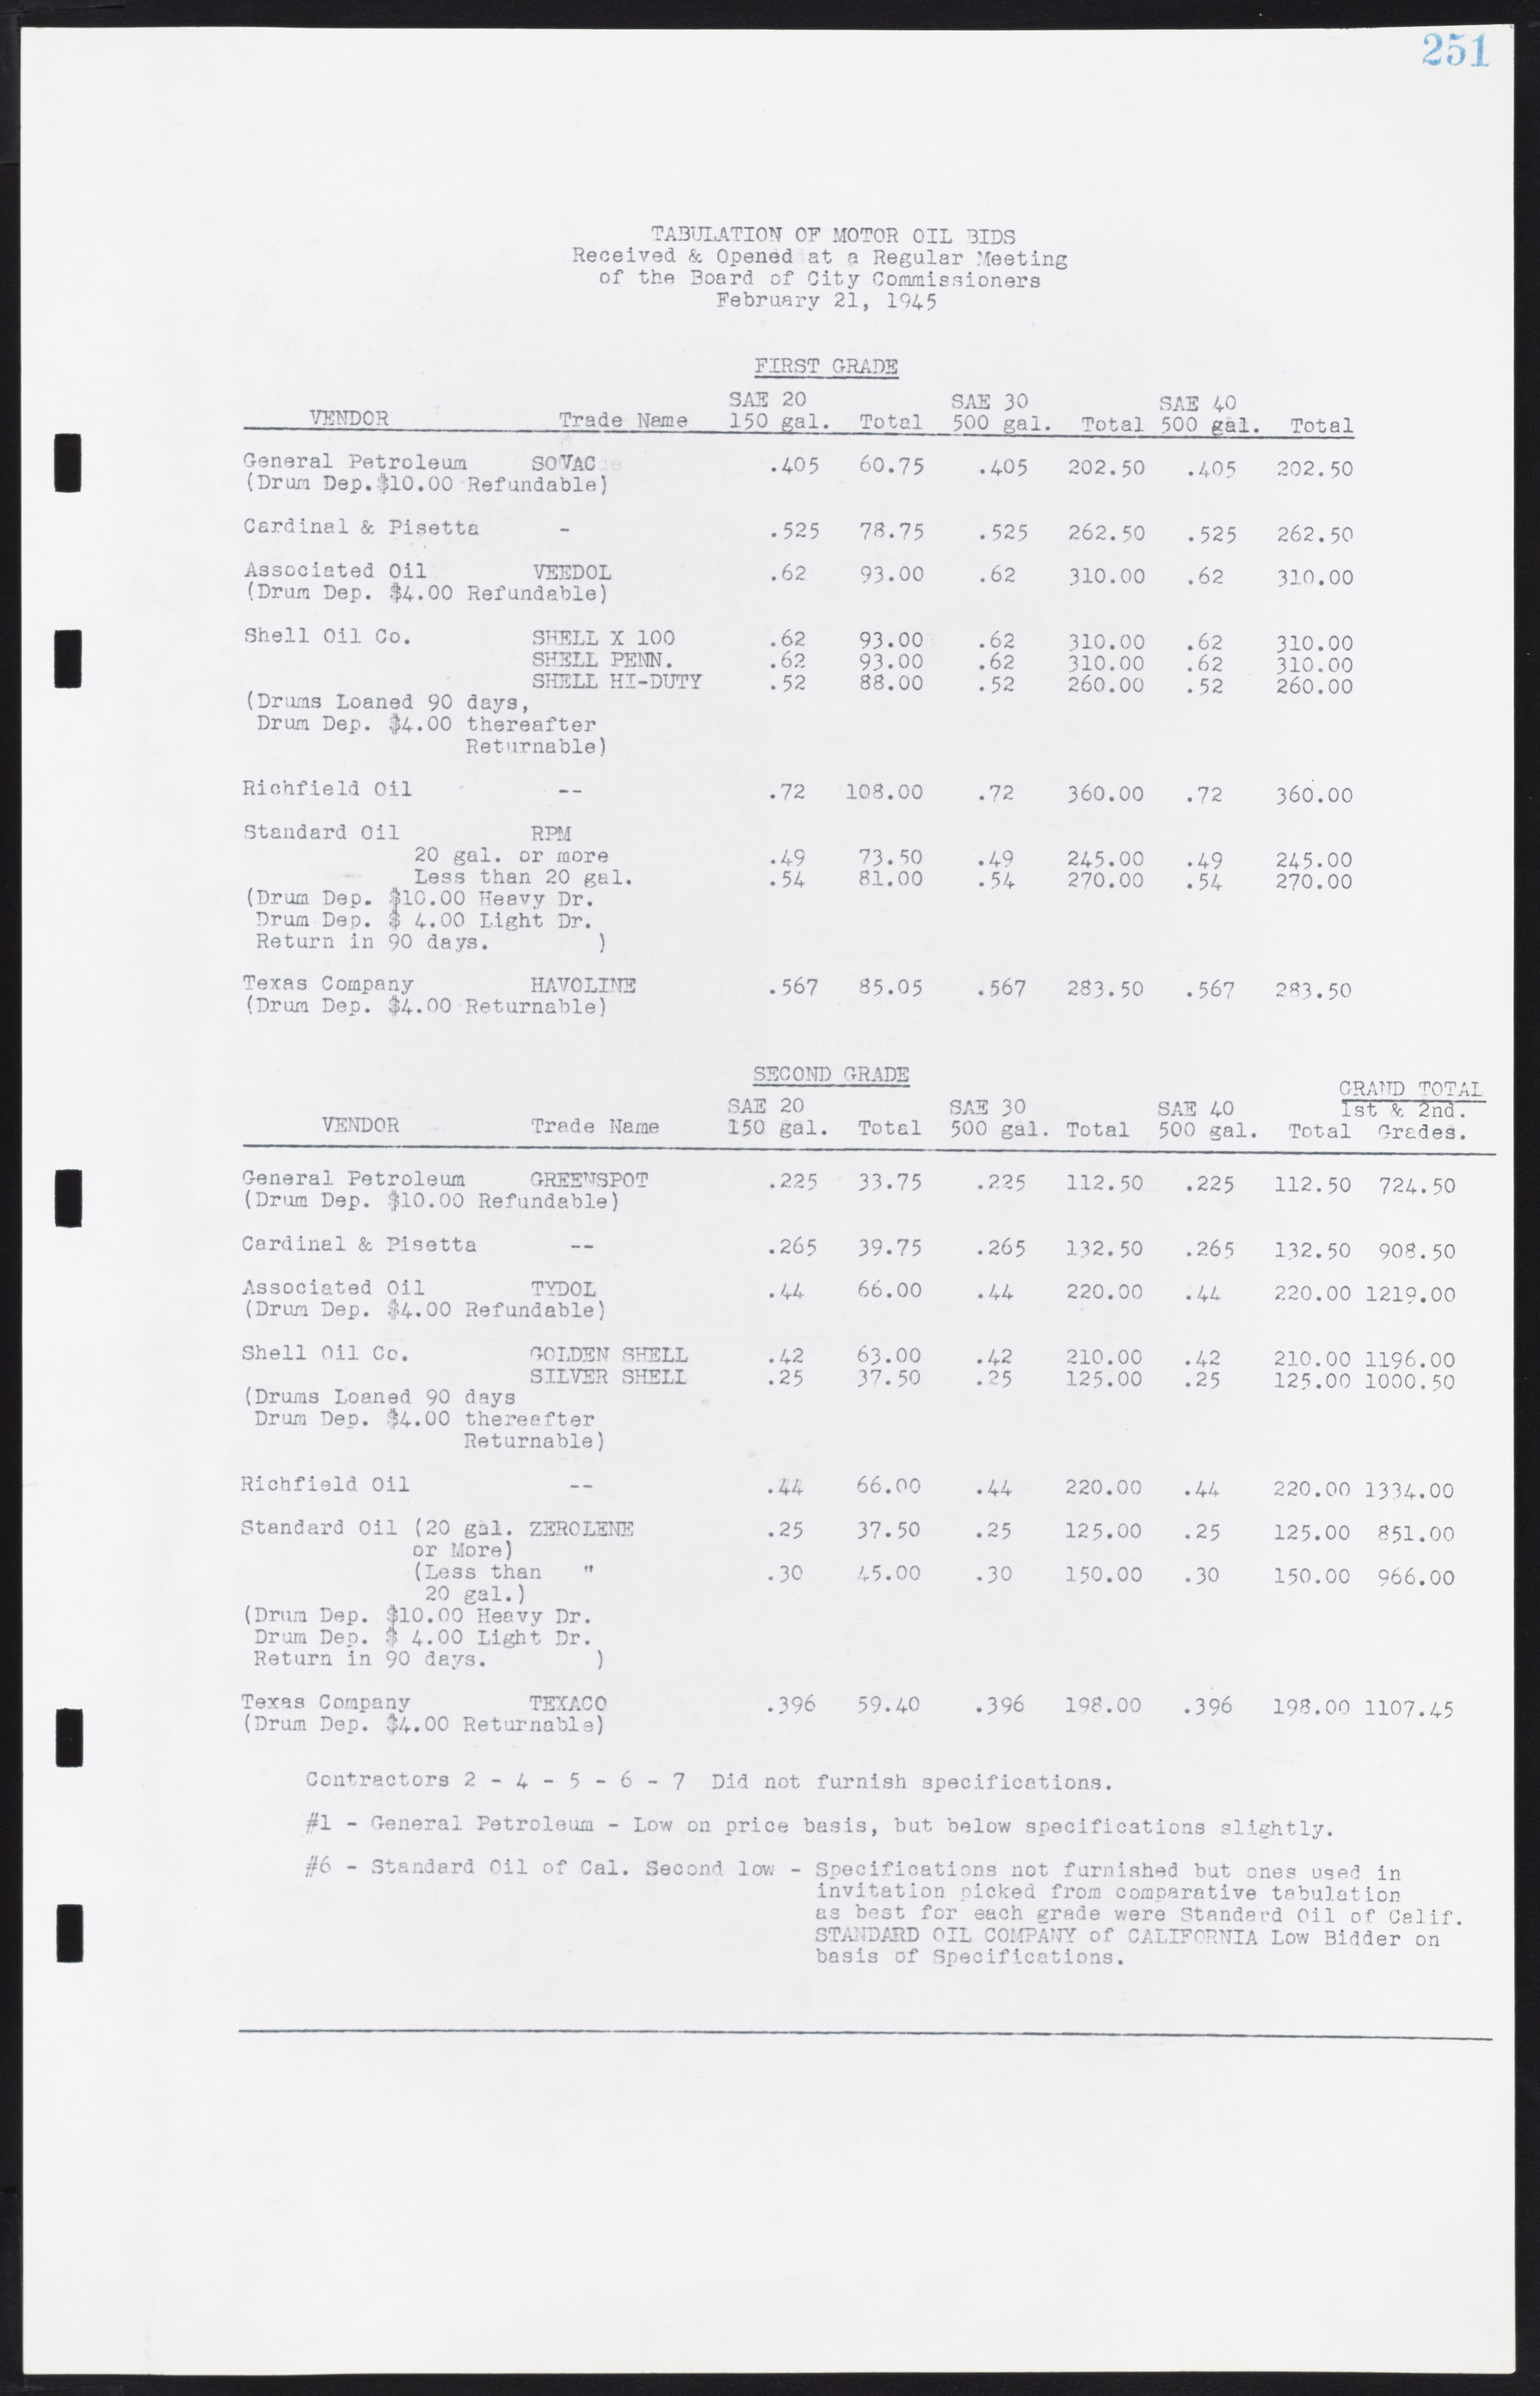 Las Vegas City Commission Minutes, August 11, 1942 to December 30, 1946, lvc000005-273